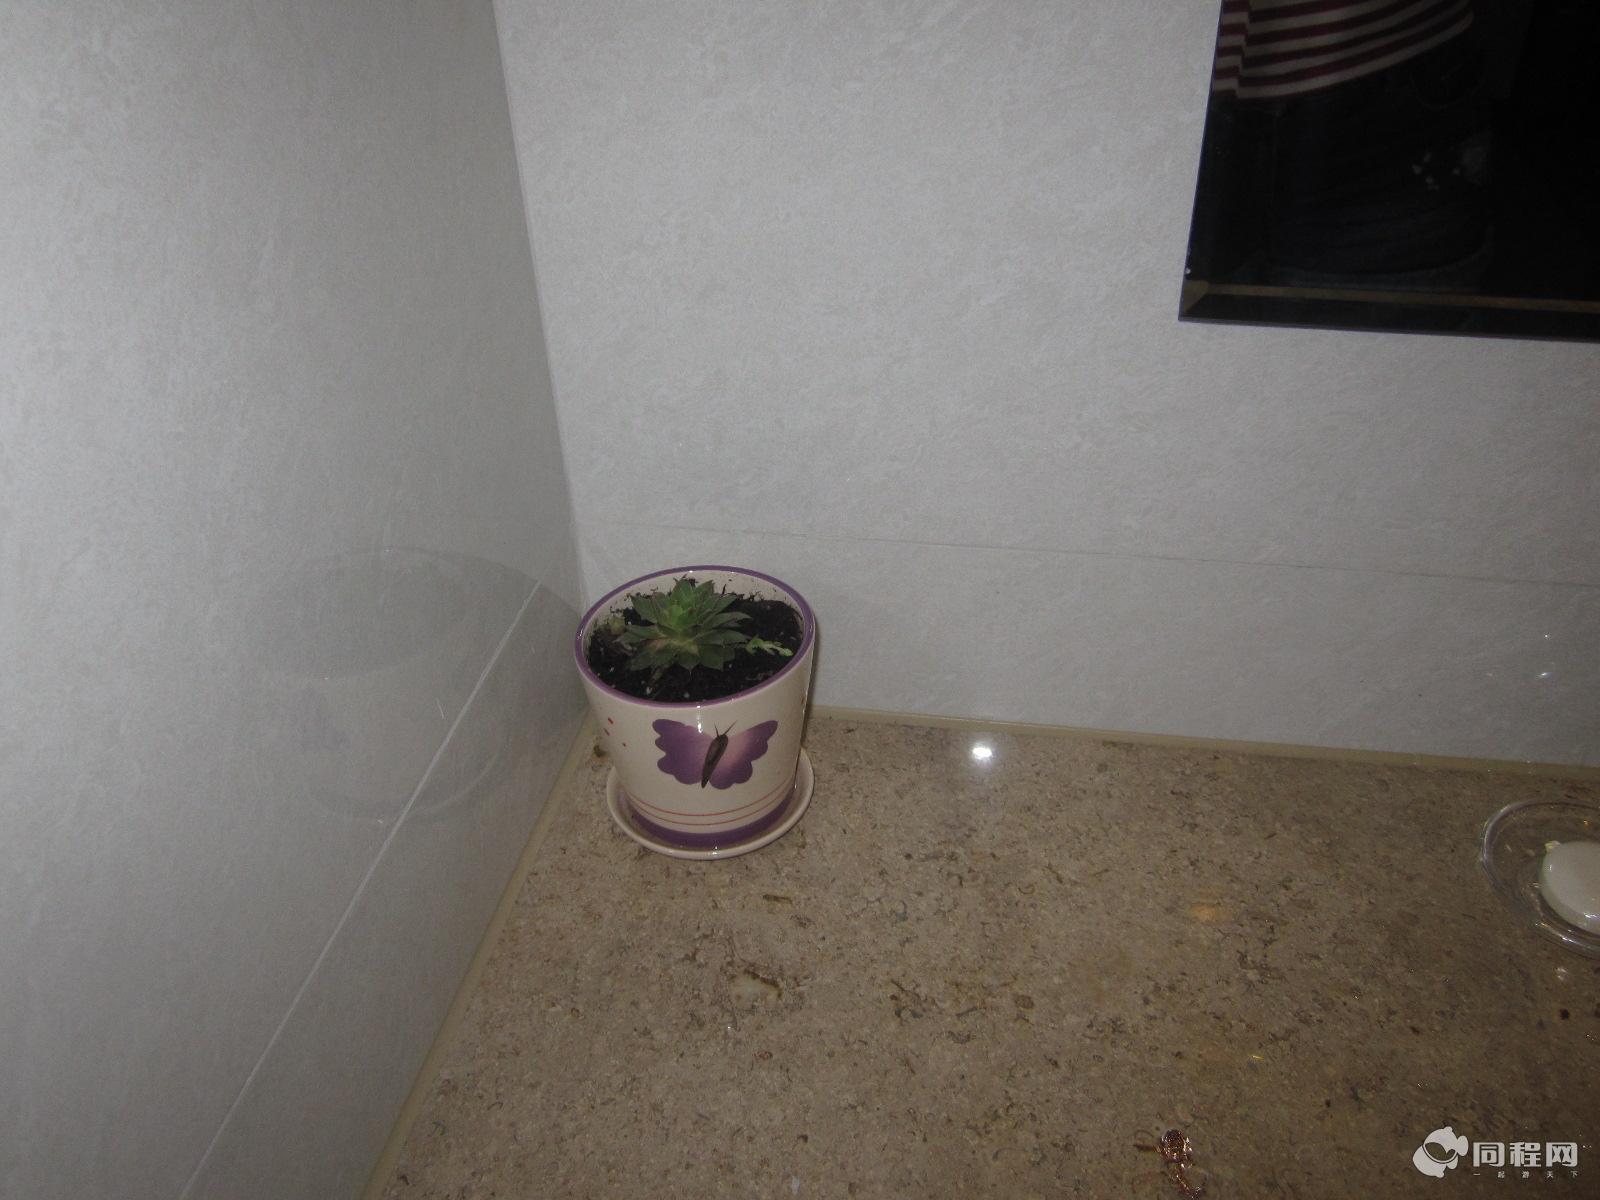 千岛湖36都斯维登连锁酒店（坪山一都店）图片洗手间竟然还有可爱的小植物,是活的喔[由13788gvq